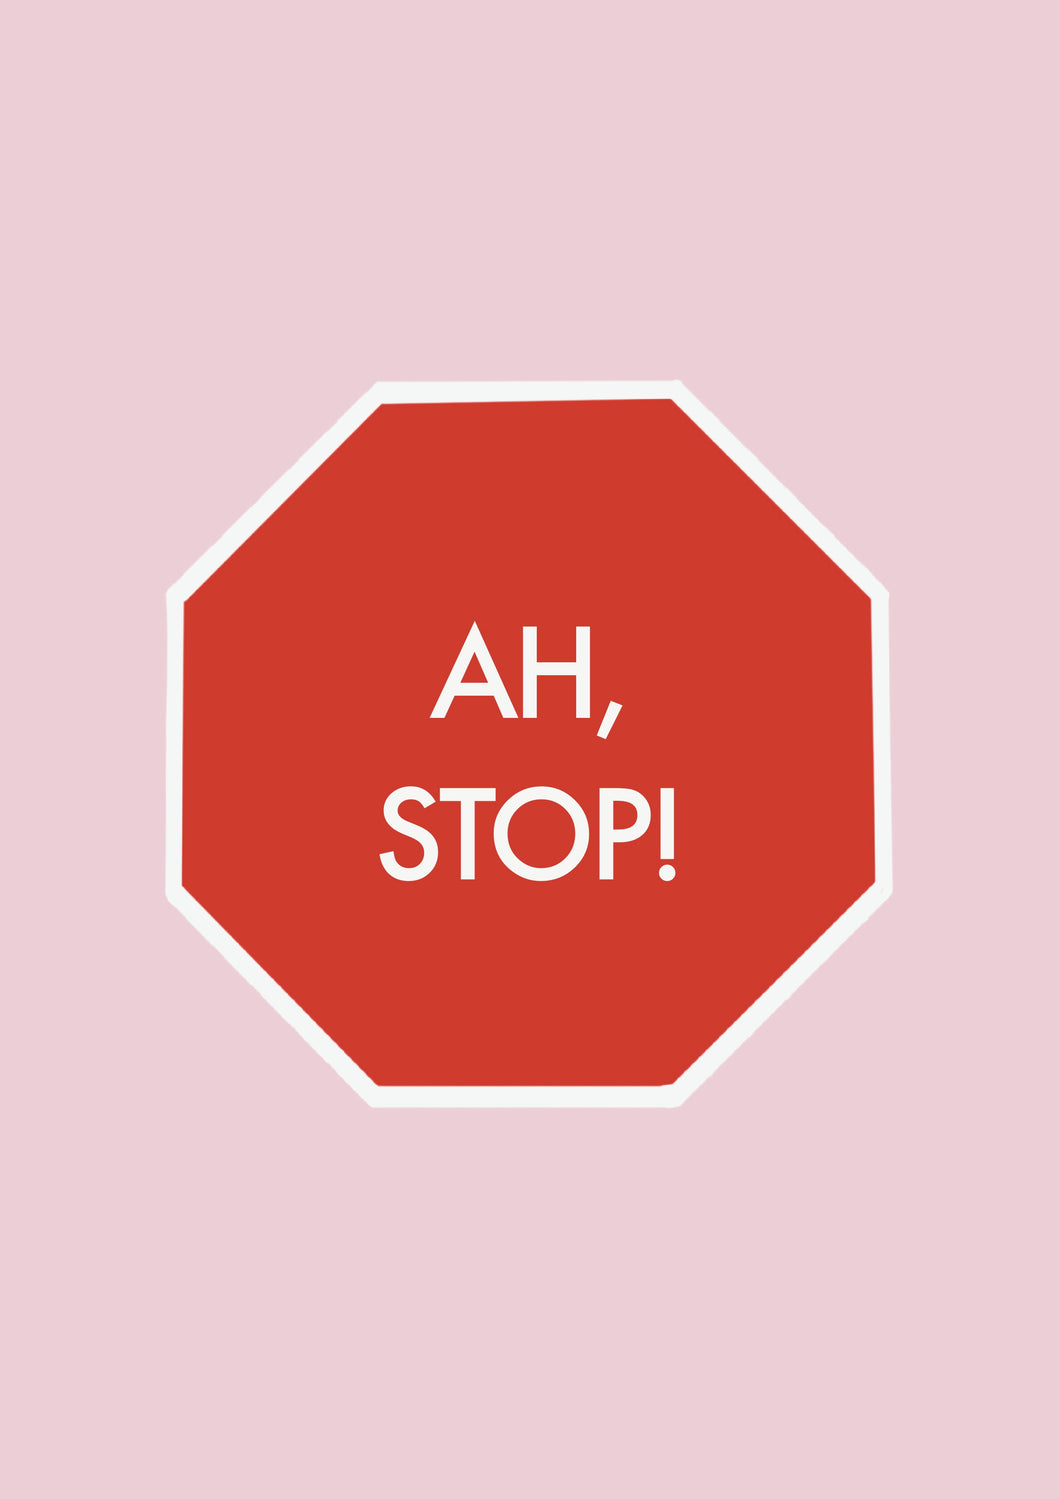 Ah stop!